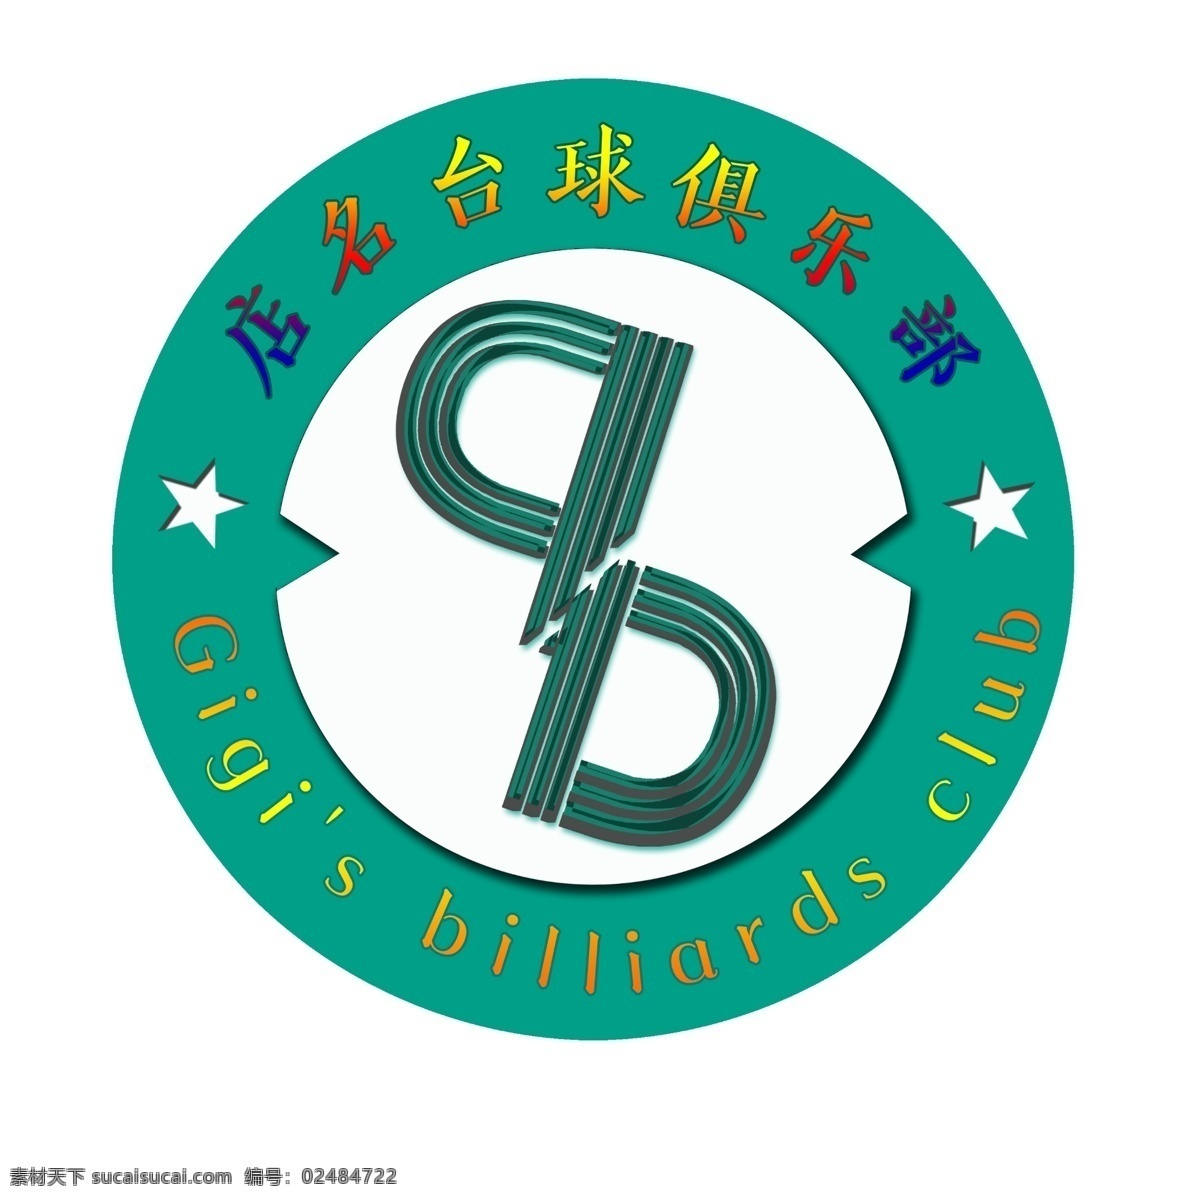 俱乐部标志 标志 台球 logo 俱乐部 黑8 广告